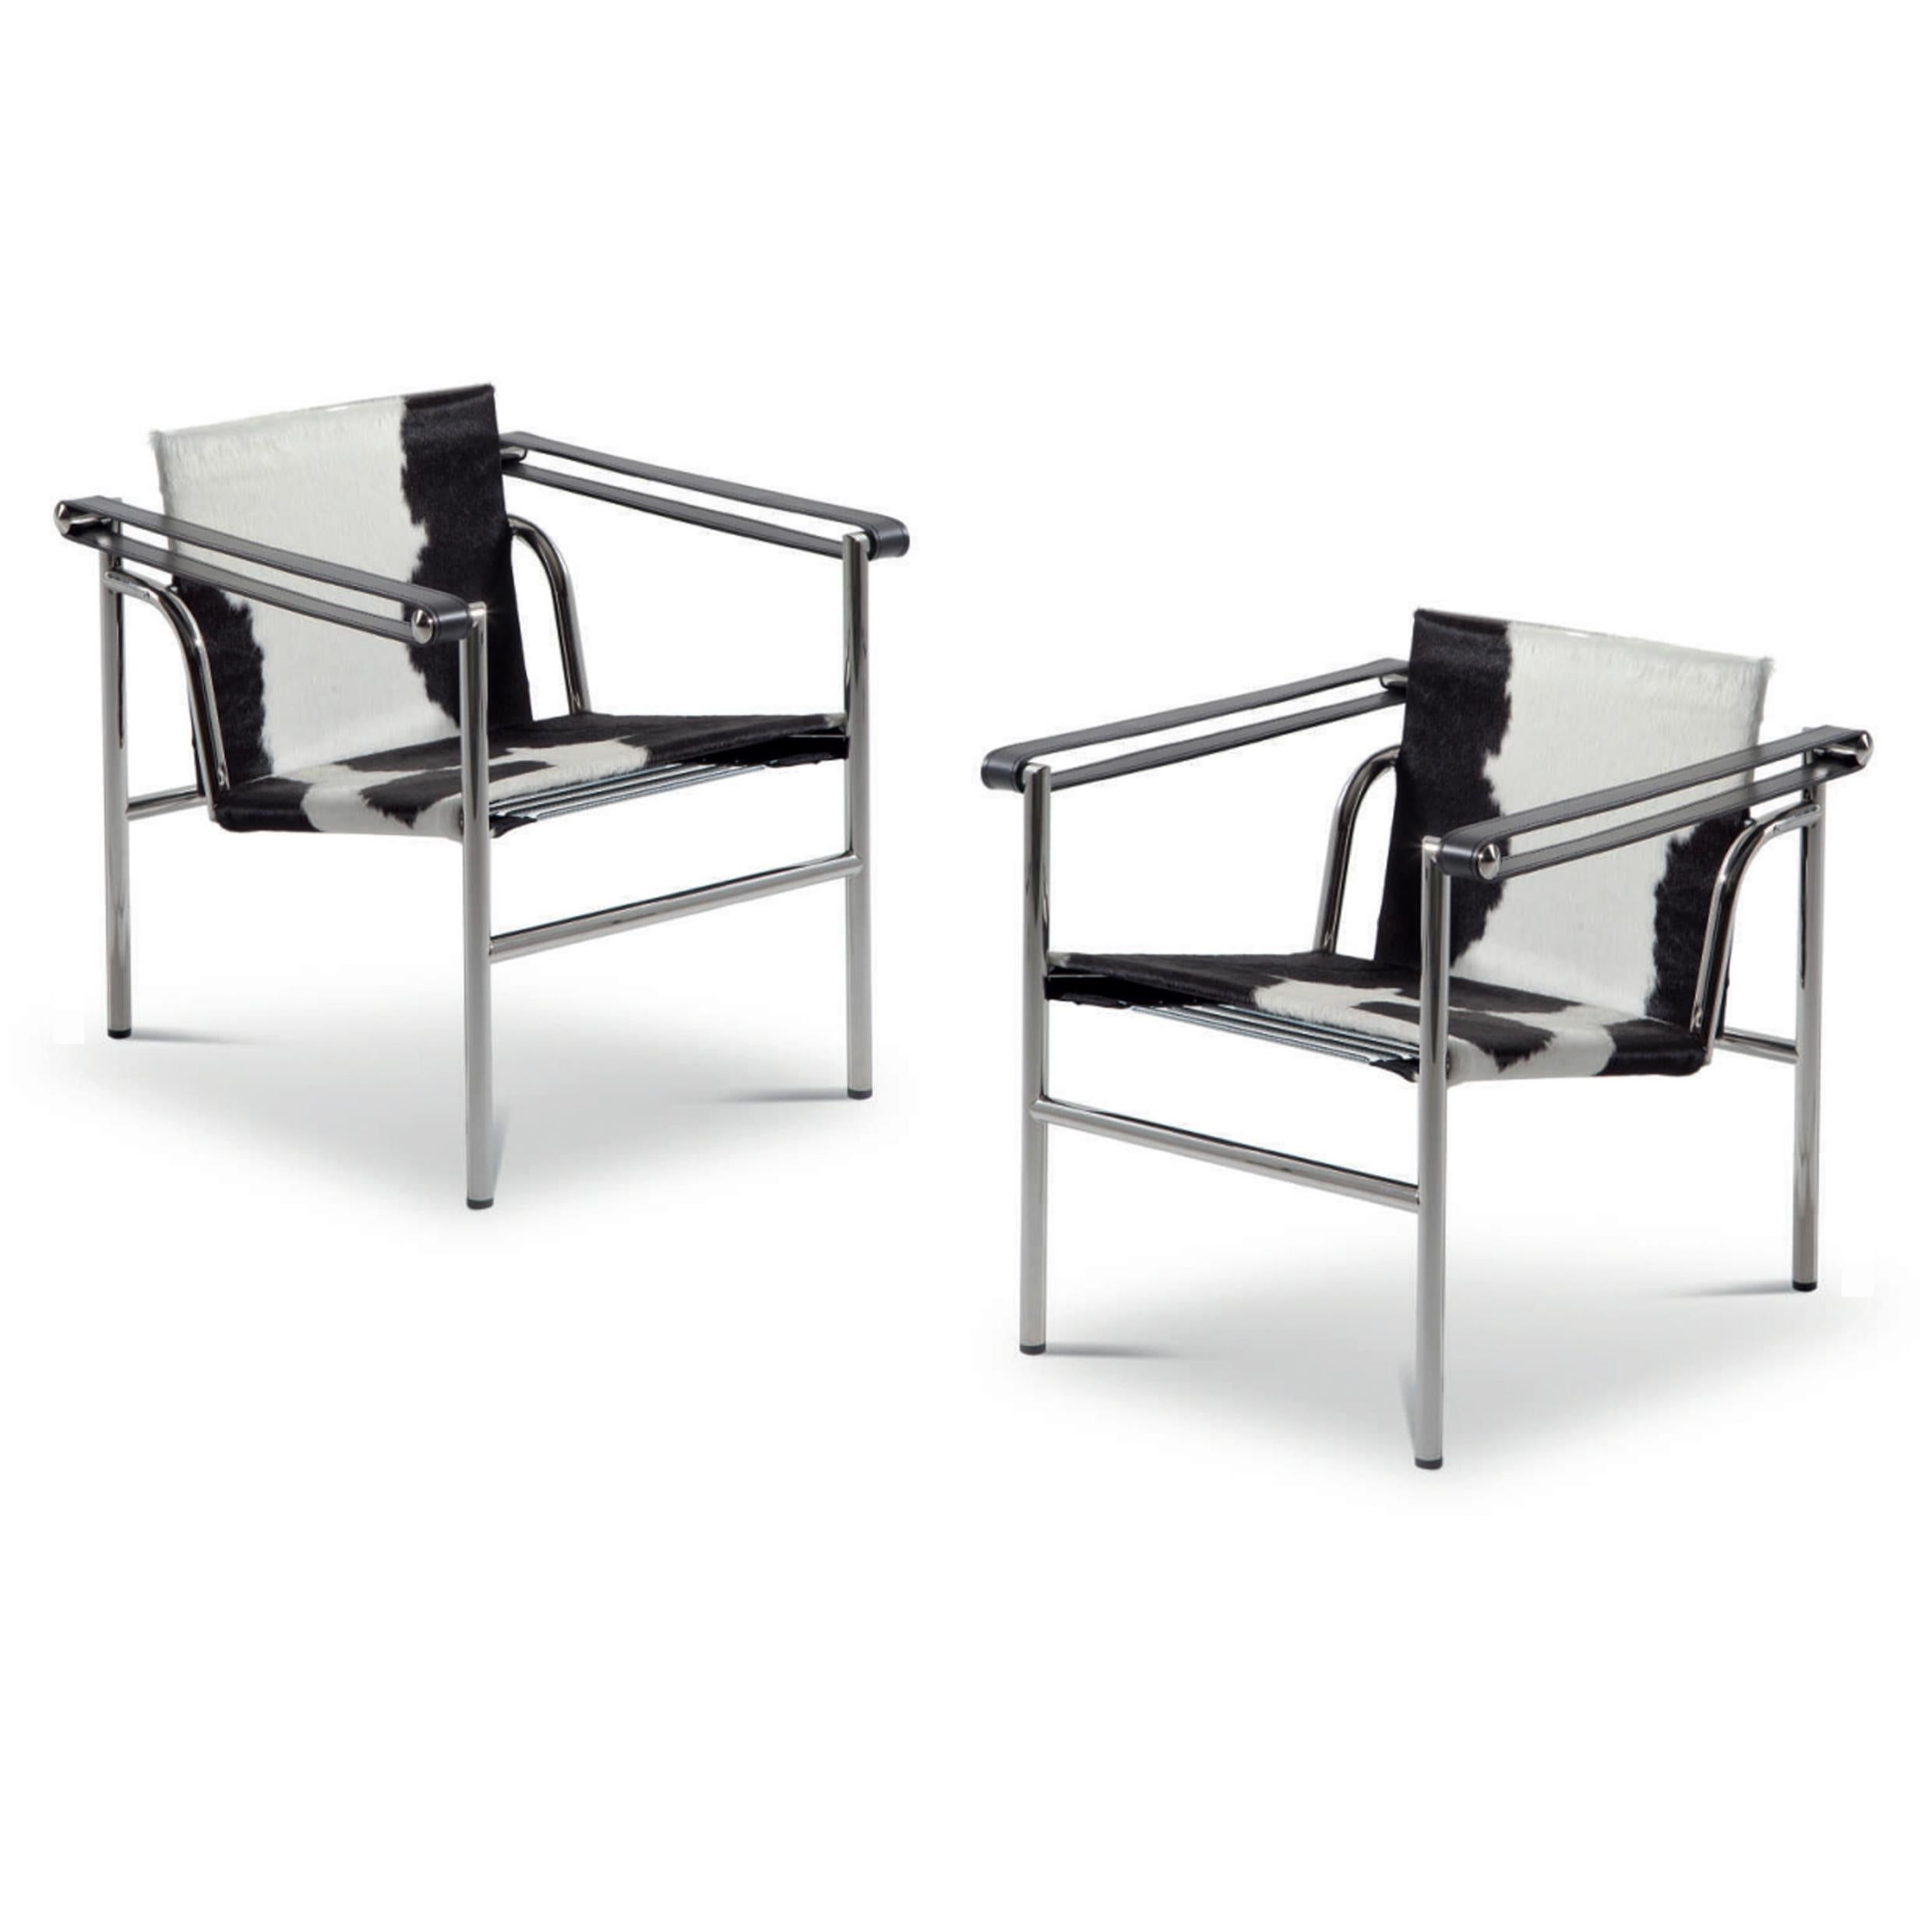 Stuhl, entworfen von Le Corbusier, Pierre Jeanneret und Charlotte Perriand im Jahr 1928. Neu aufgelegt im Jahr 1965.
Hergestellt von Cassina in Italien.

Ein leichter, kompakter Stuhl, der zusammen mit anderen wichtigen Modellen wie den Sesseln LC2